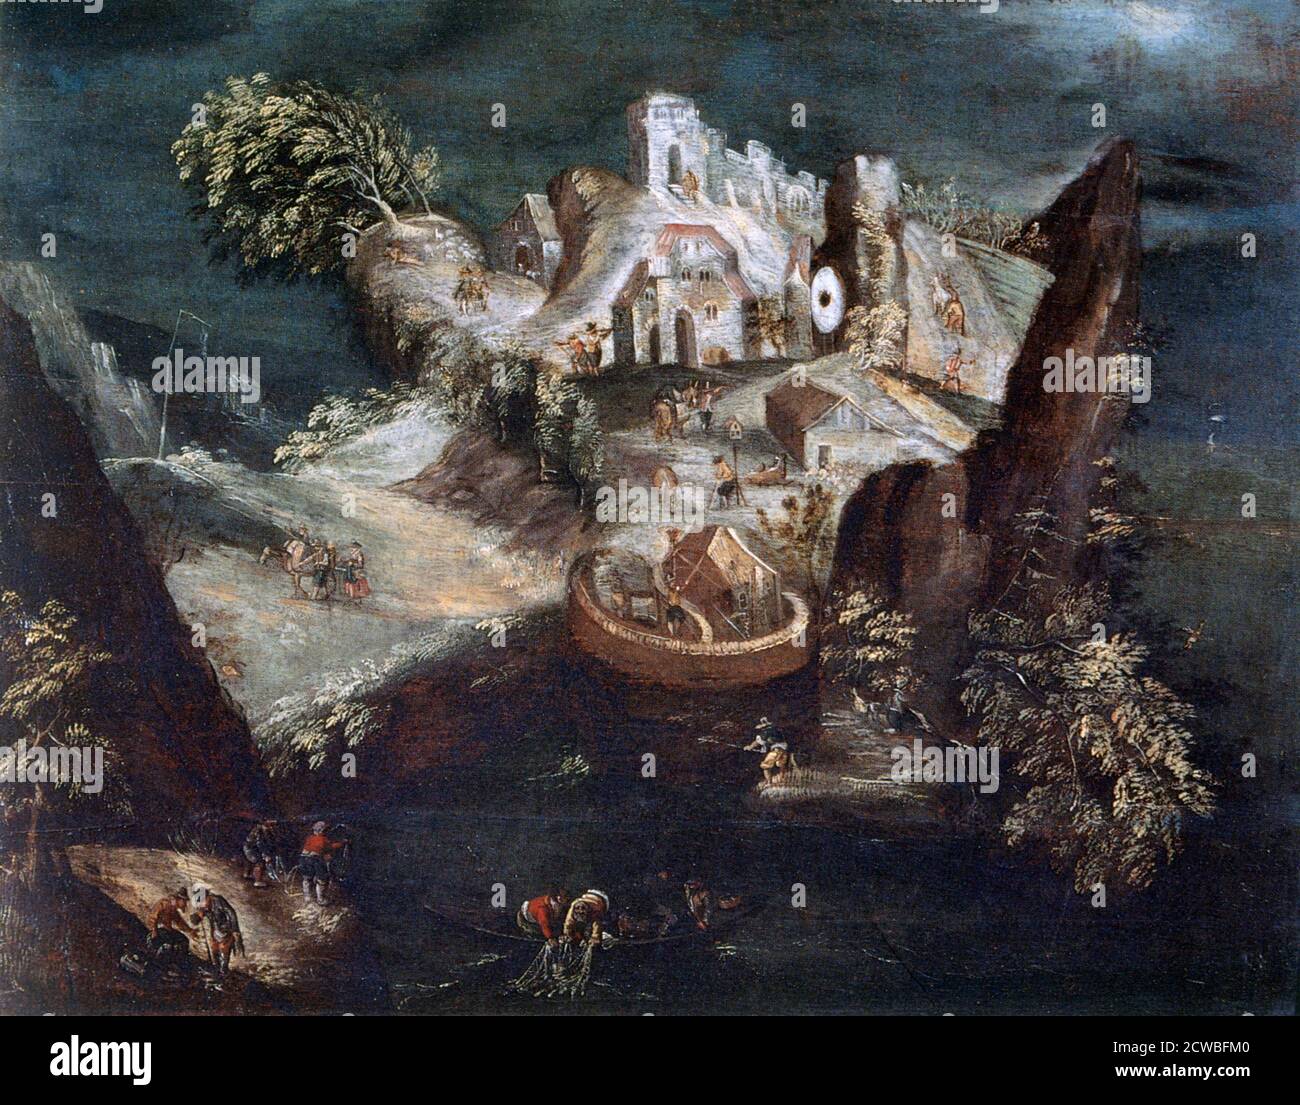 Anthropomorphe Landschaft', c1613-1650. Künstler: Matthäus Merian. Matthäus Merian (1593-1650) war ein in der Schweiz geborener Kupferstecher, der die meiste Zeit seiner Karriere in Frankfurt arbeitete. Stockfoto